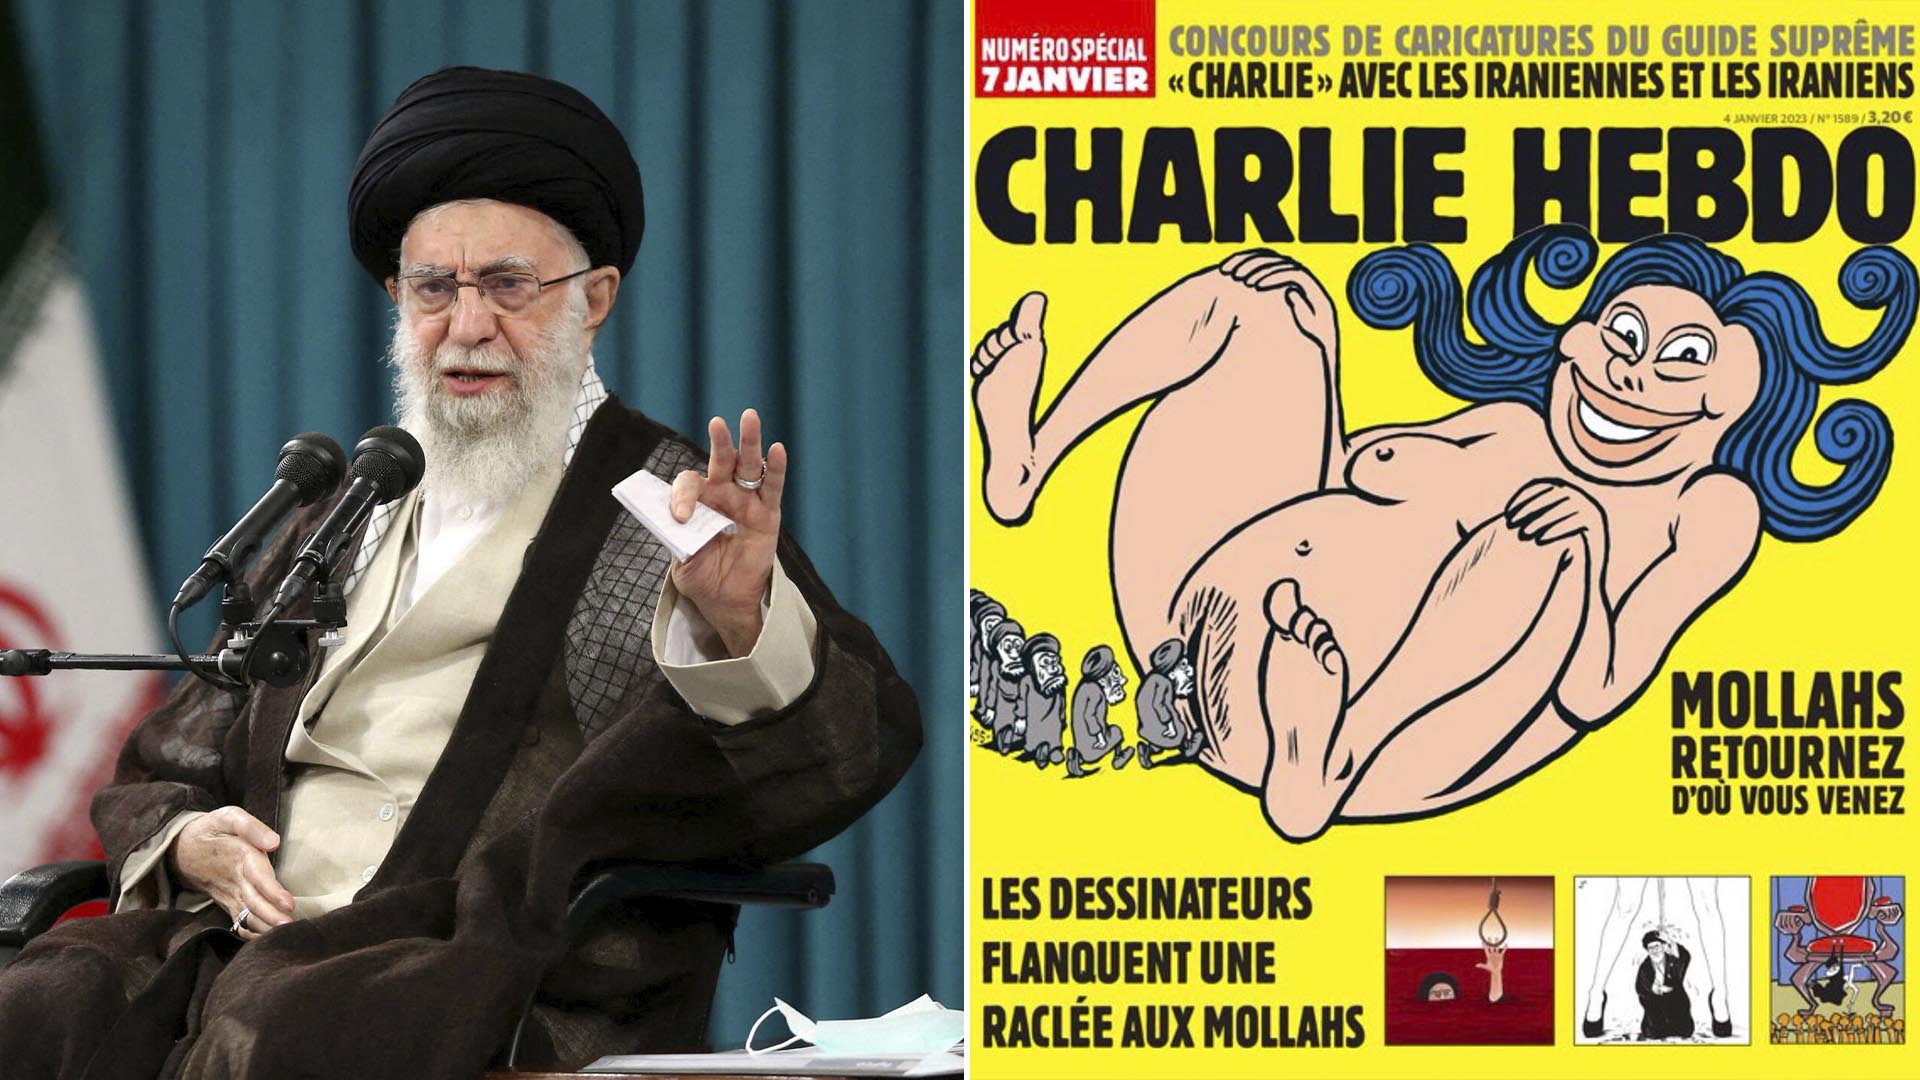 Foto de archivo del ayatollah Ali Khamenei y la portada del 7 de enero de Charlie Hebdo